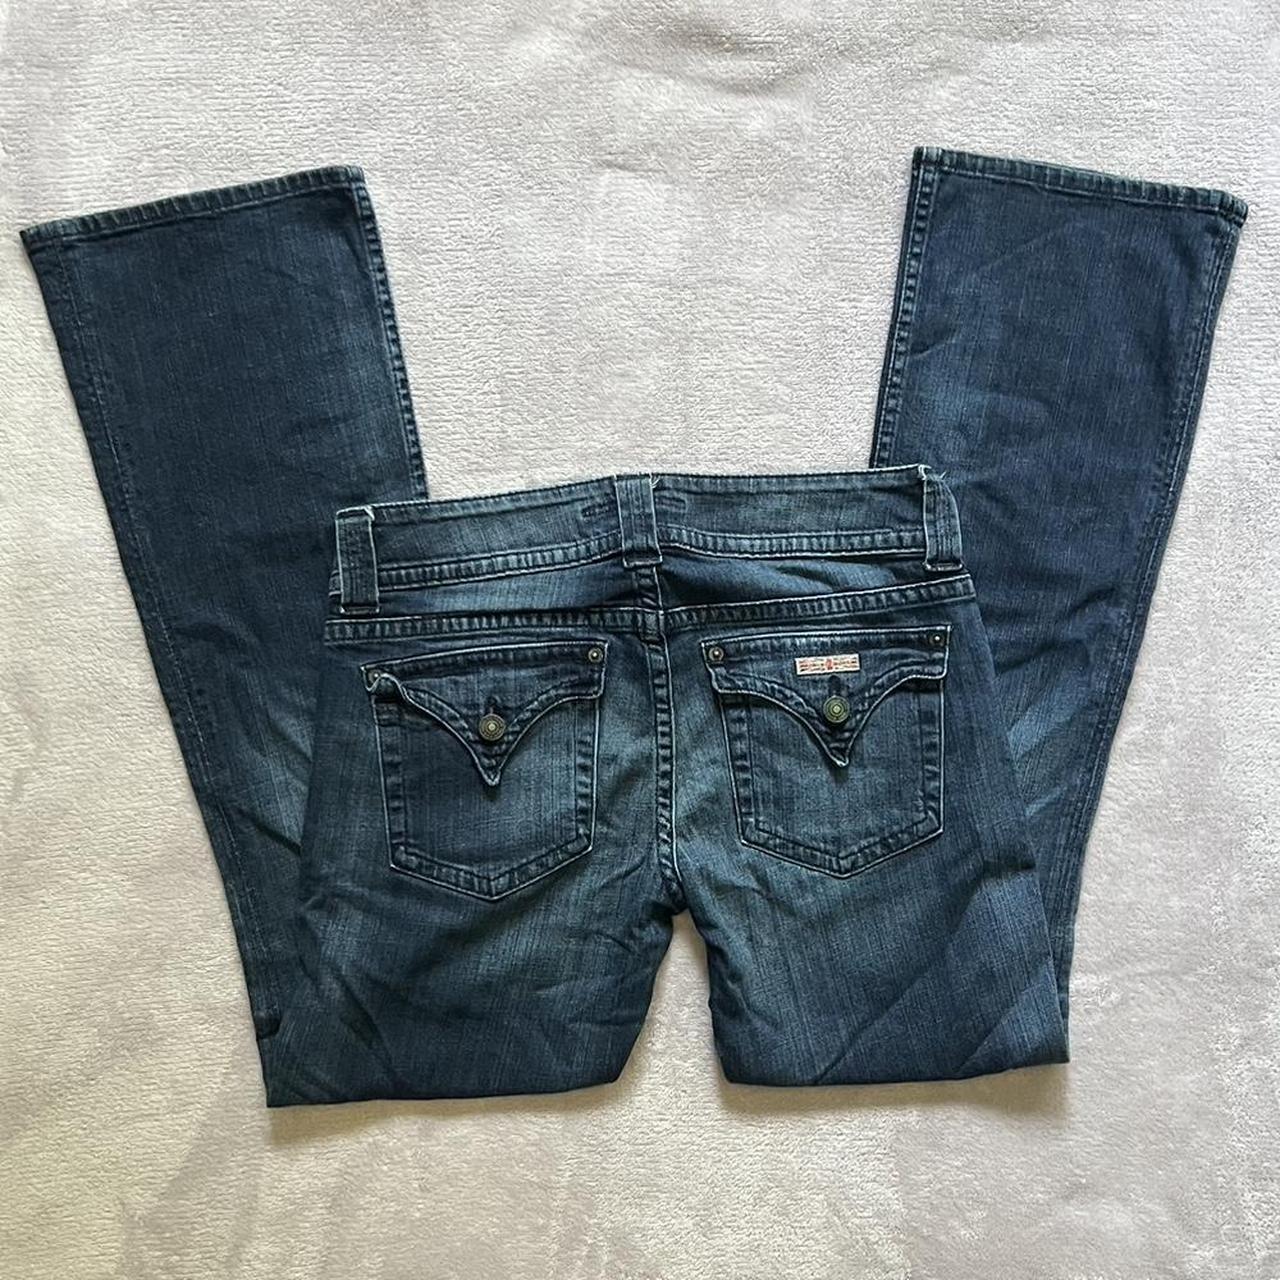 size 29” dark wash bootcut hudson jeans vintage... - Depop